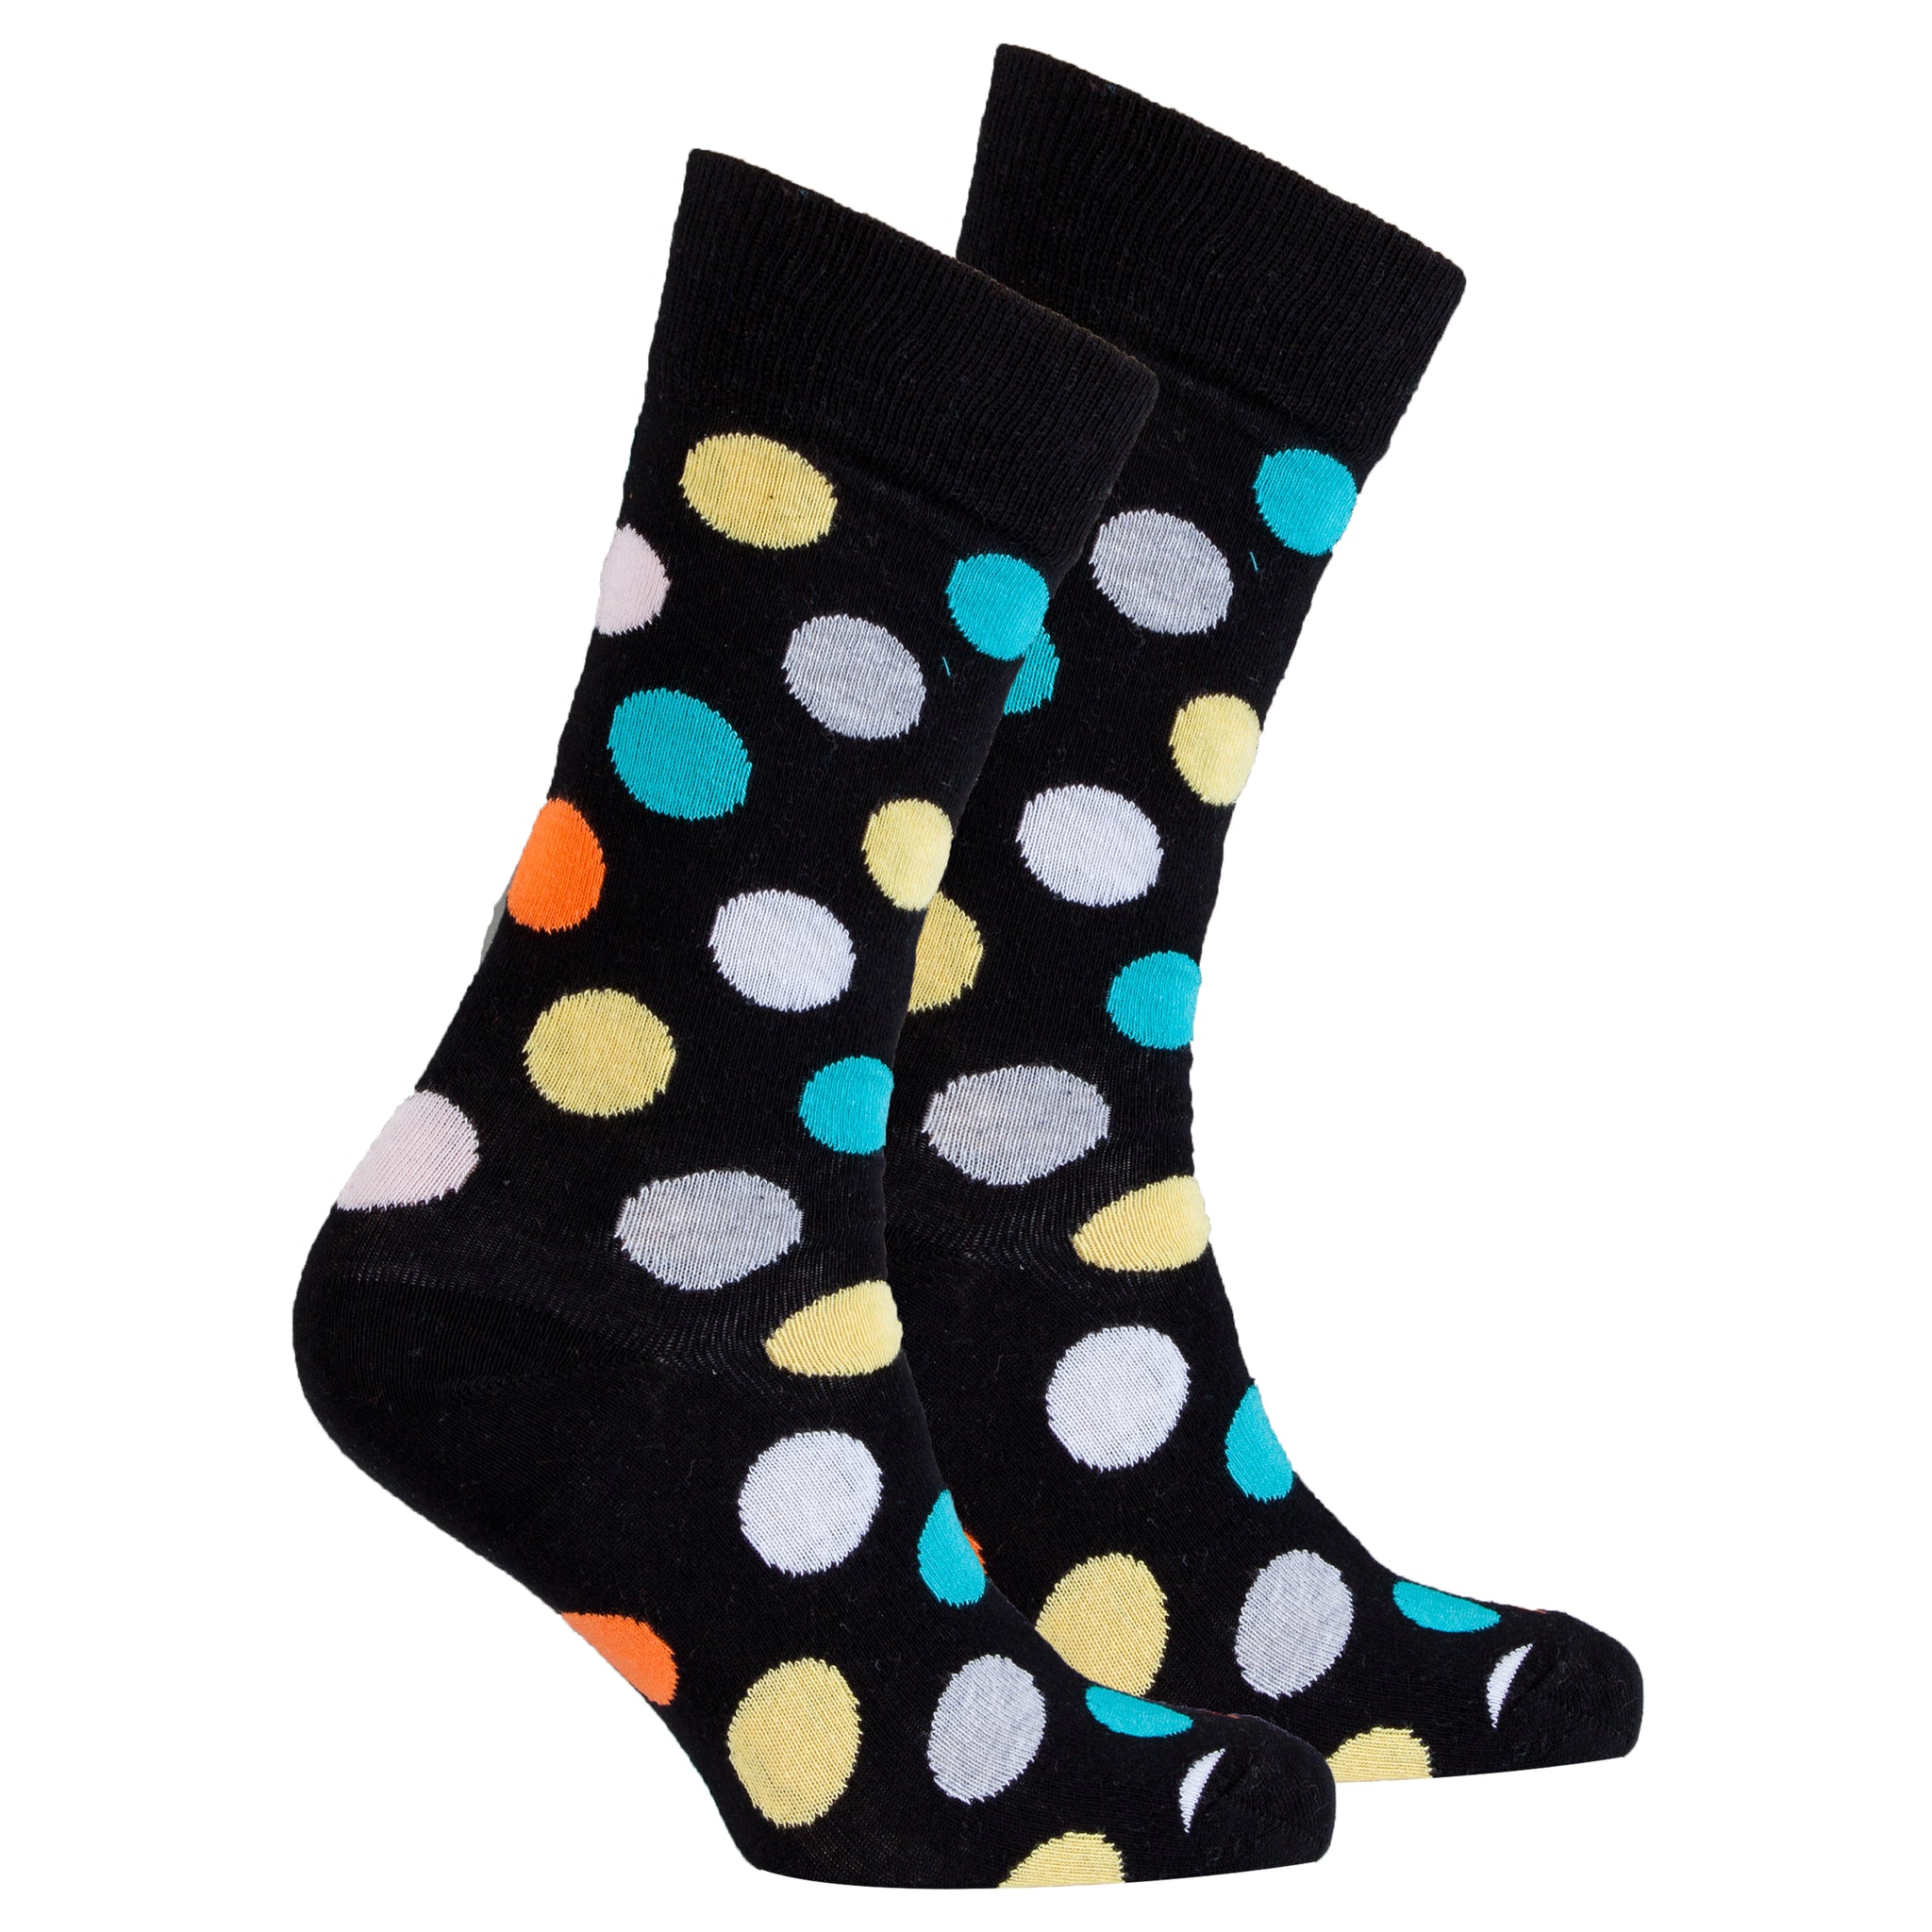 Men's Mixed Black Dot Socks